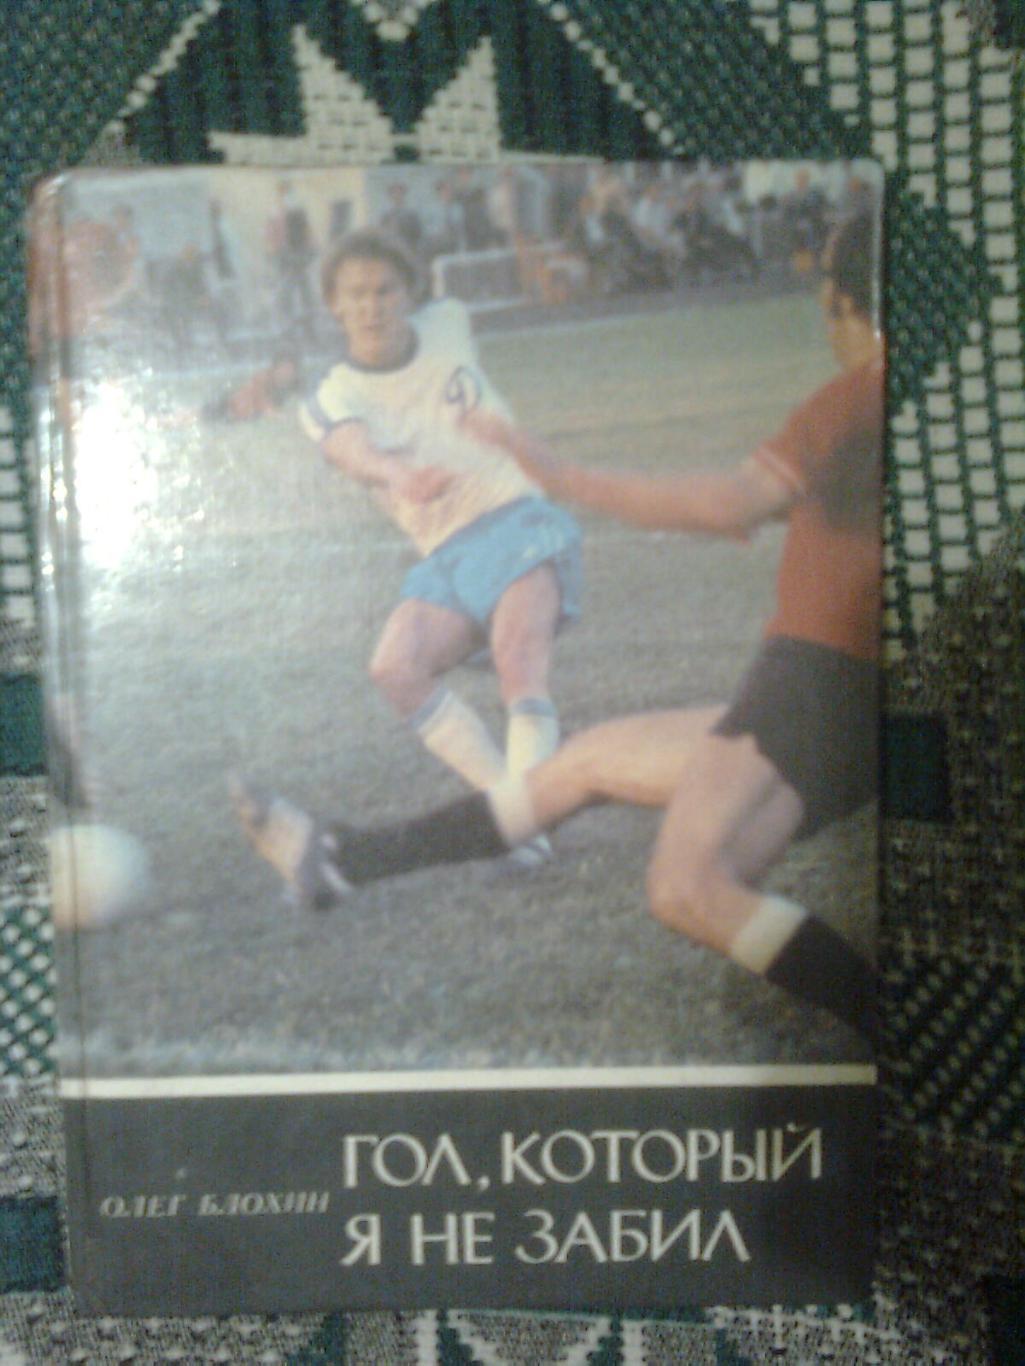 Гол, который я не забил Олег Блохин 1981 .Киев